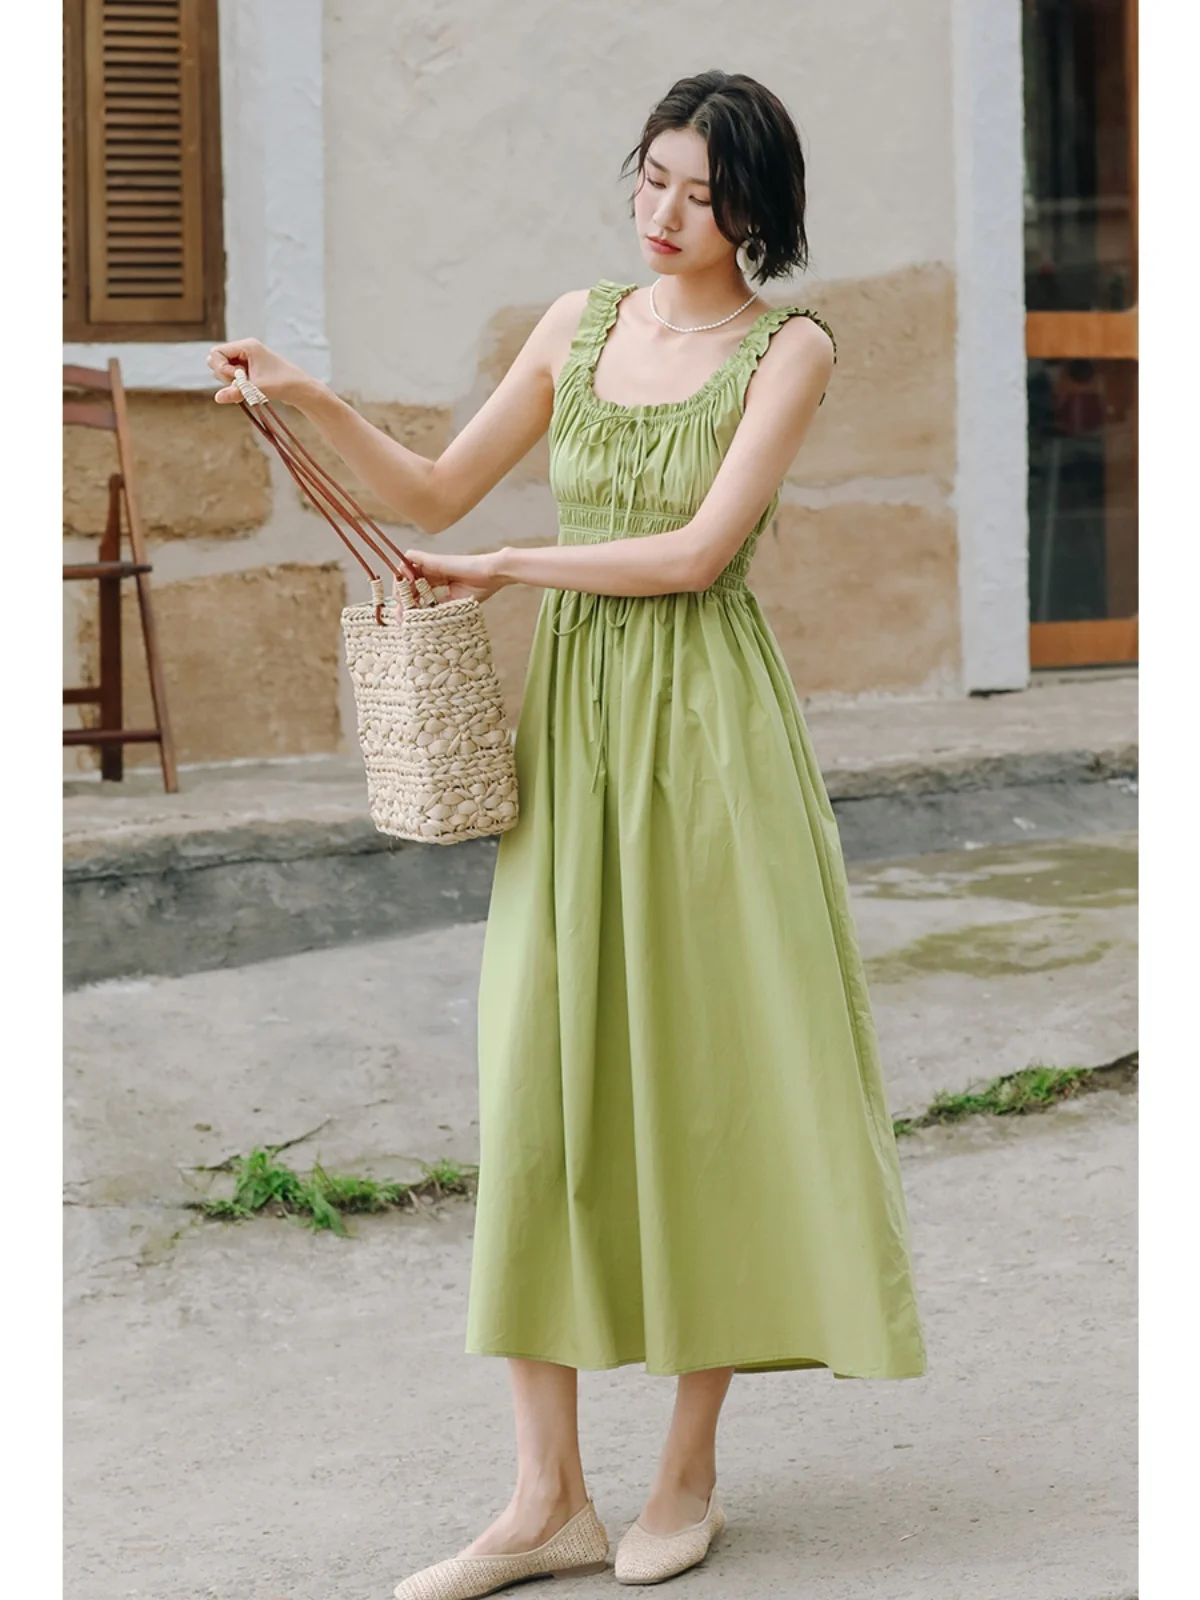 Green Pure Cotton Dress High Grade Tea Break French Waist Strap Long Dress Women's Summer Vacation Bra Dress